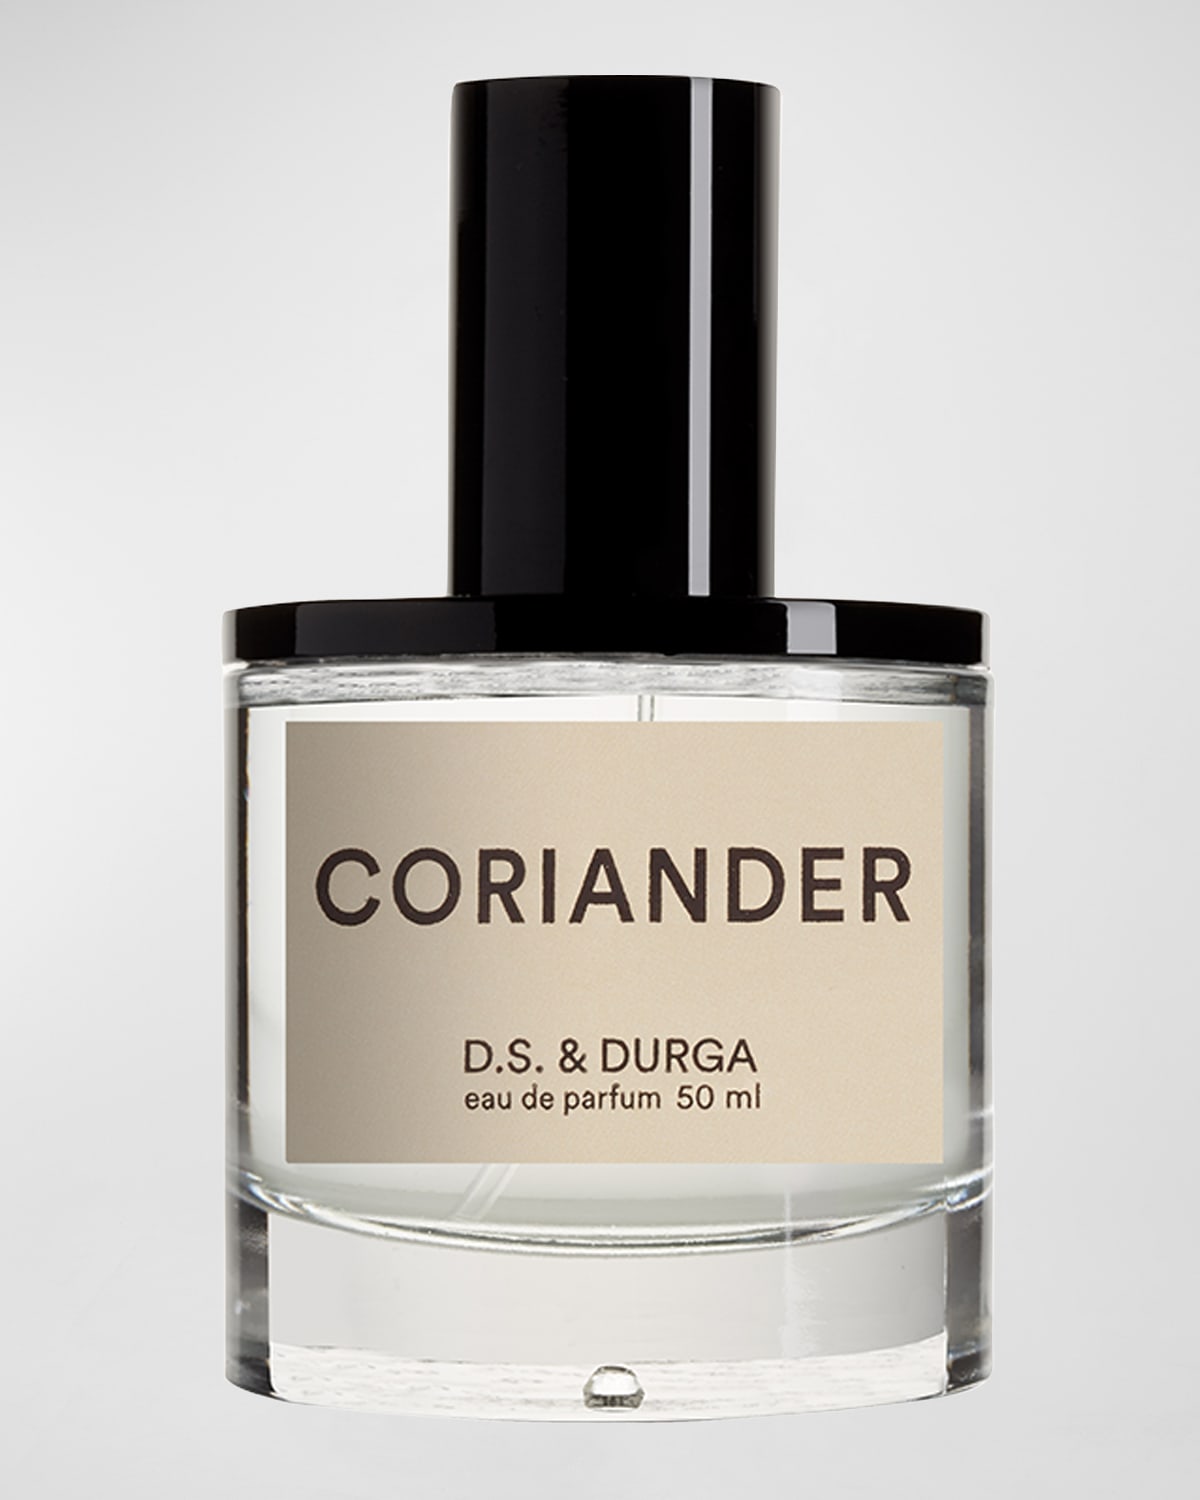 D.S. & DURGA 1.7 oz. Coriander Eau de Parfum